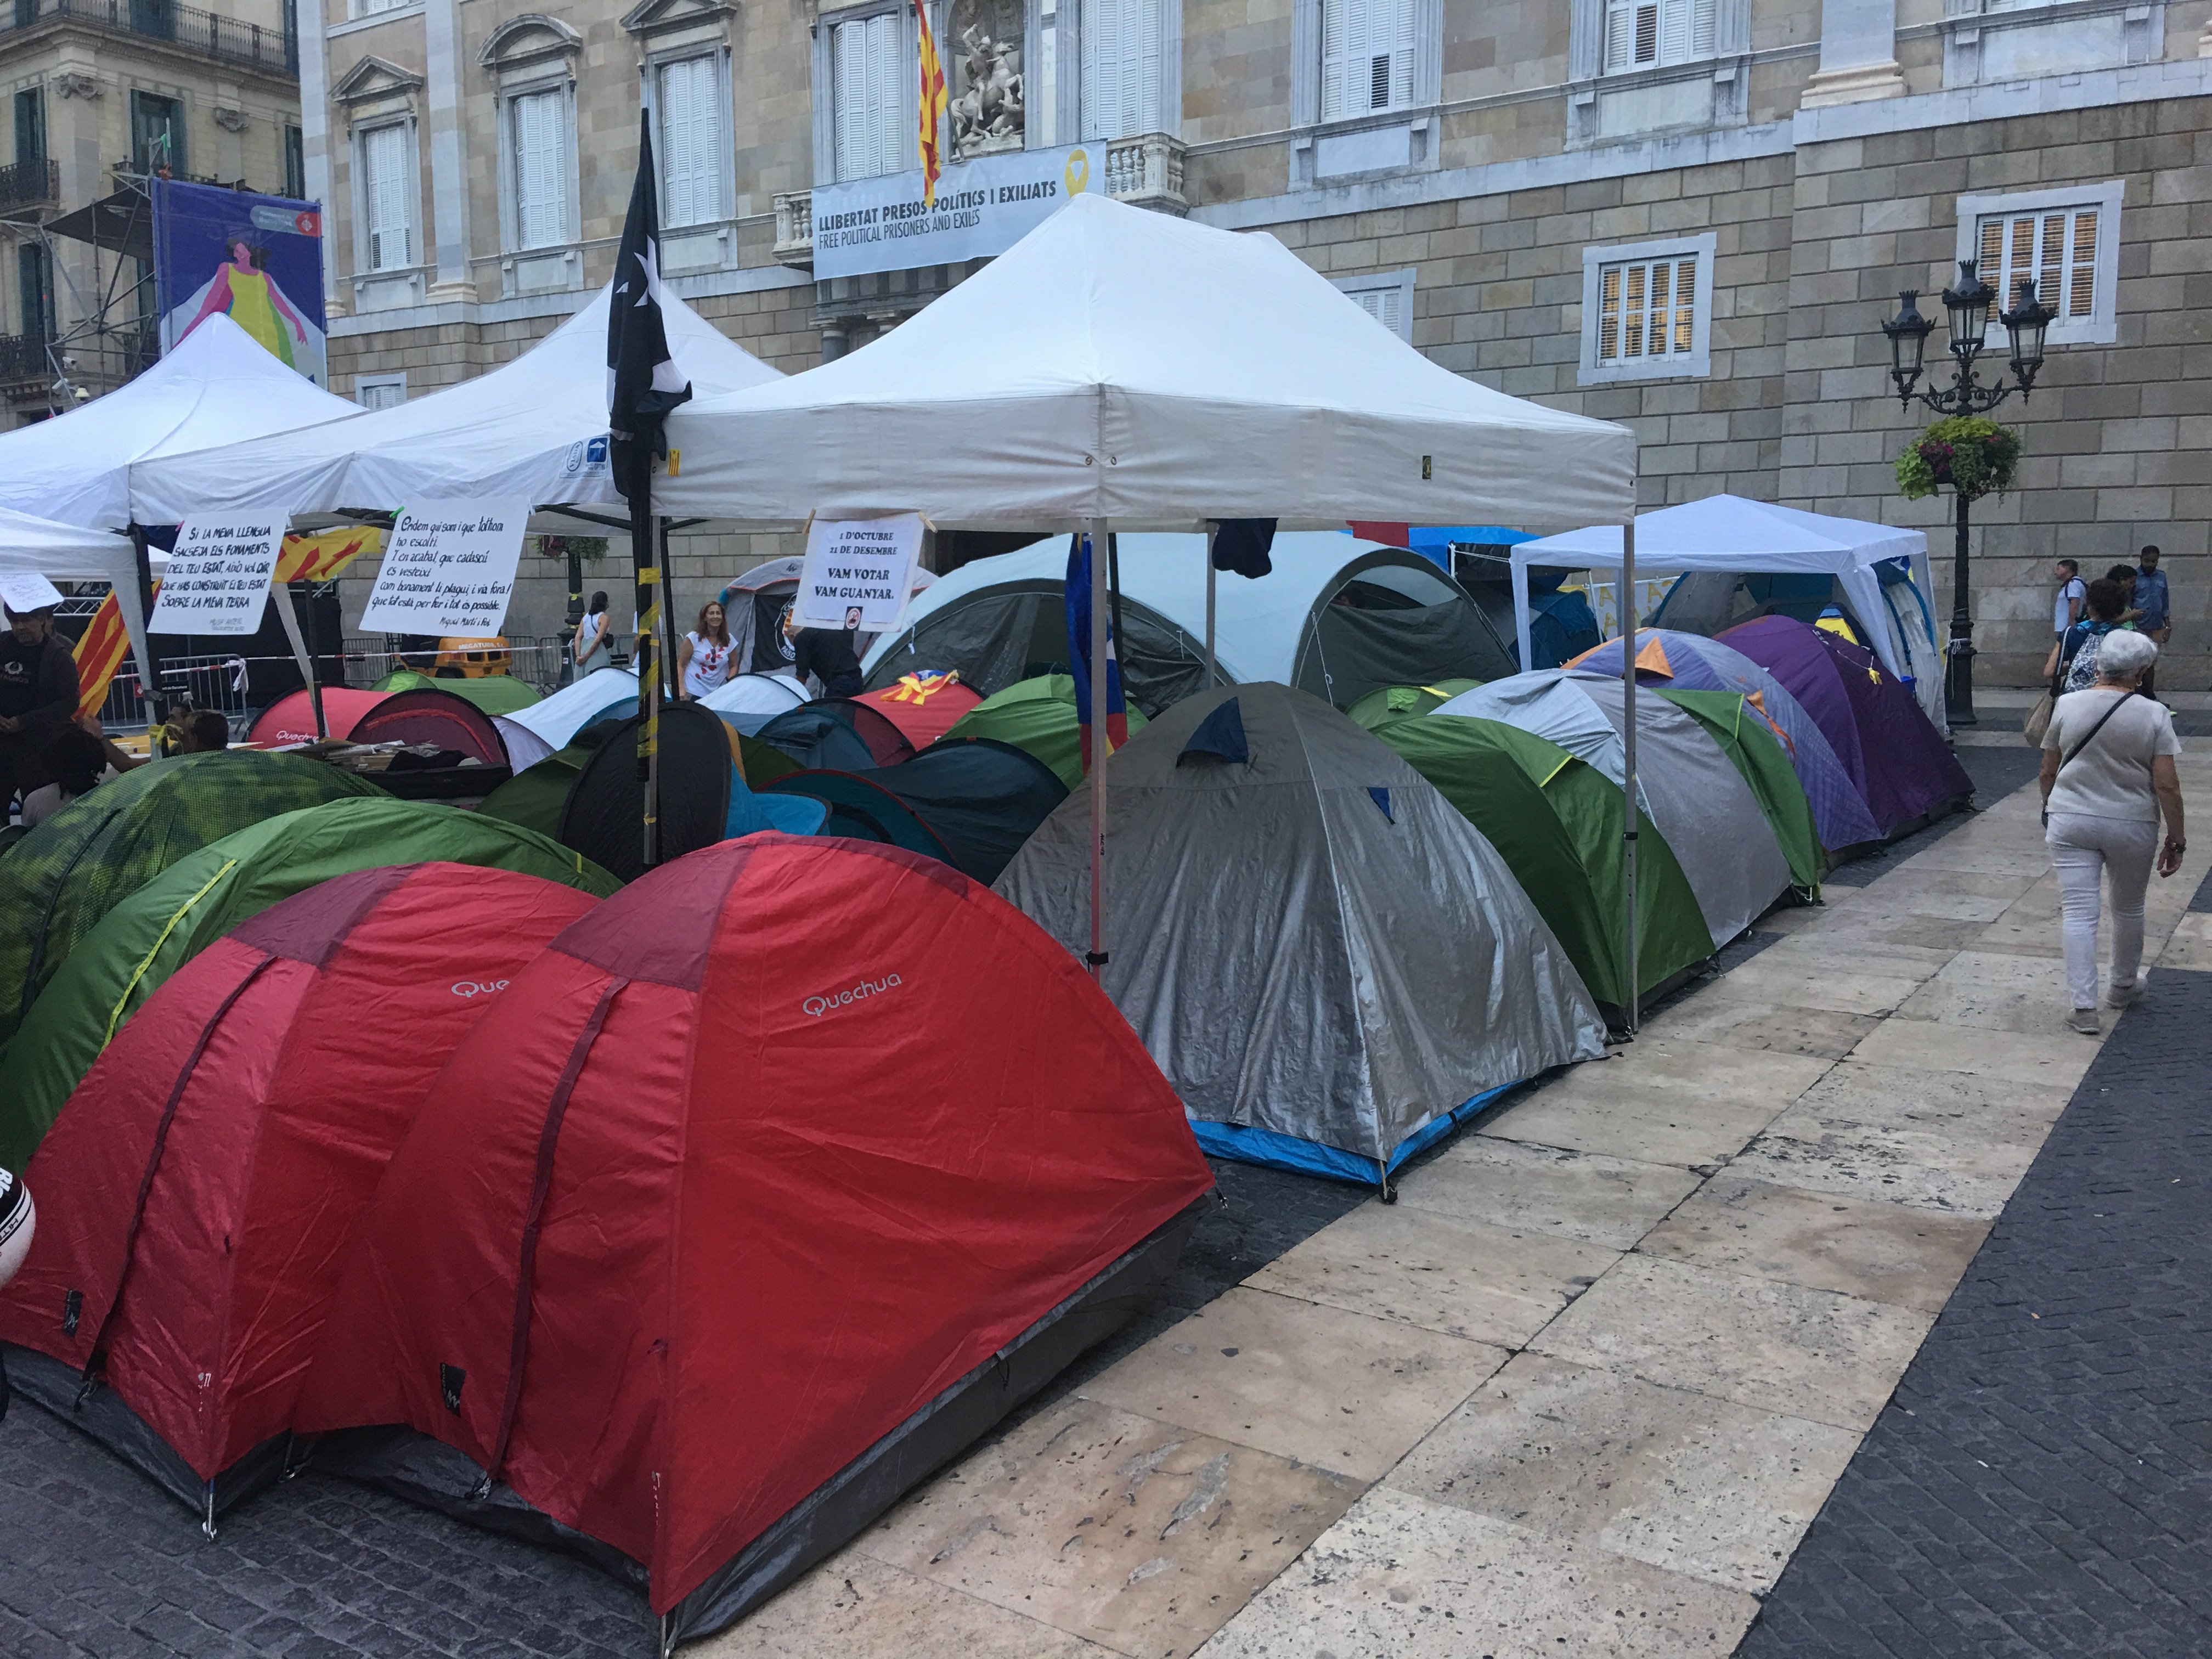 La acampada independentista vuelve a instalarse en plaza Sant Jaume